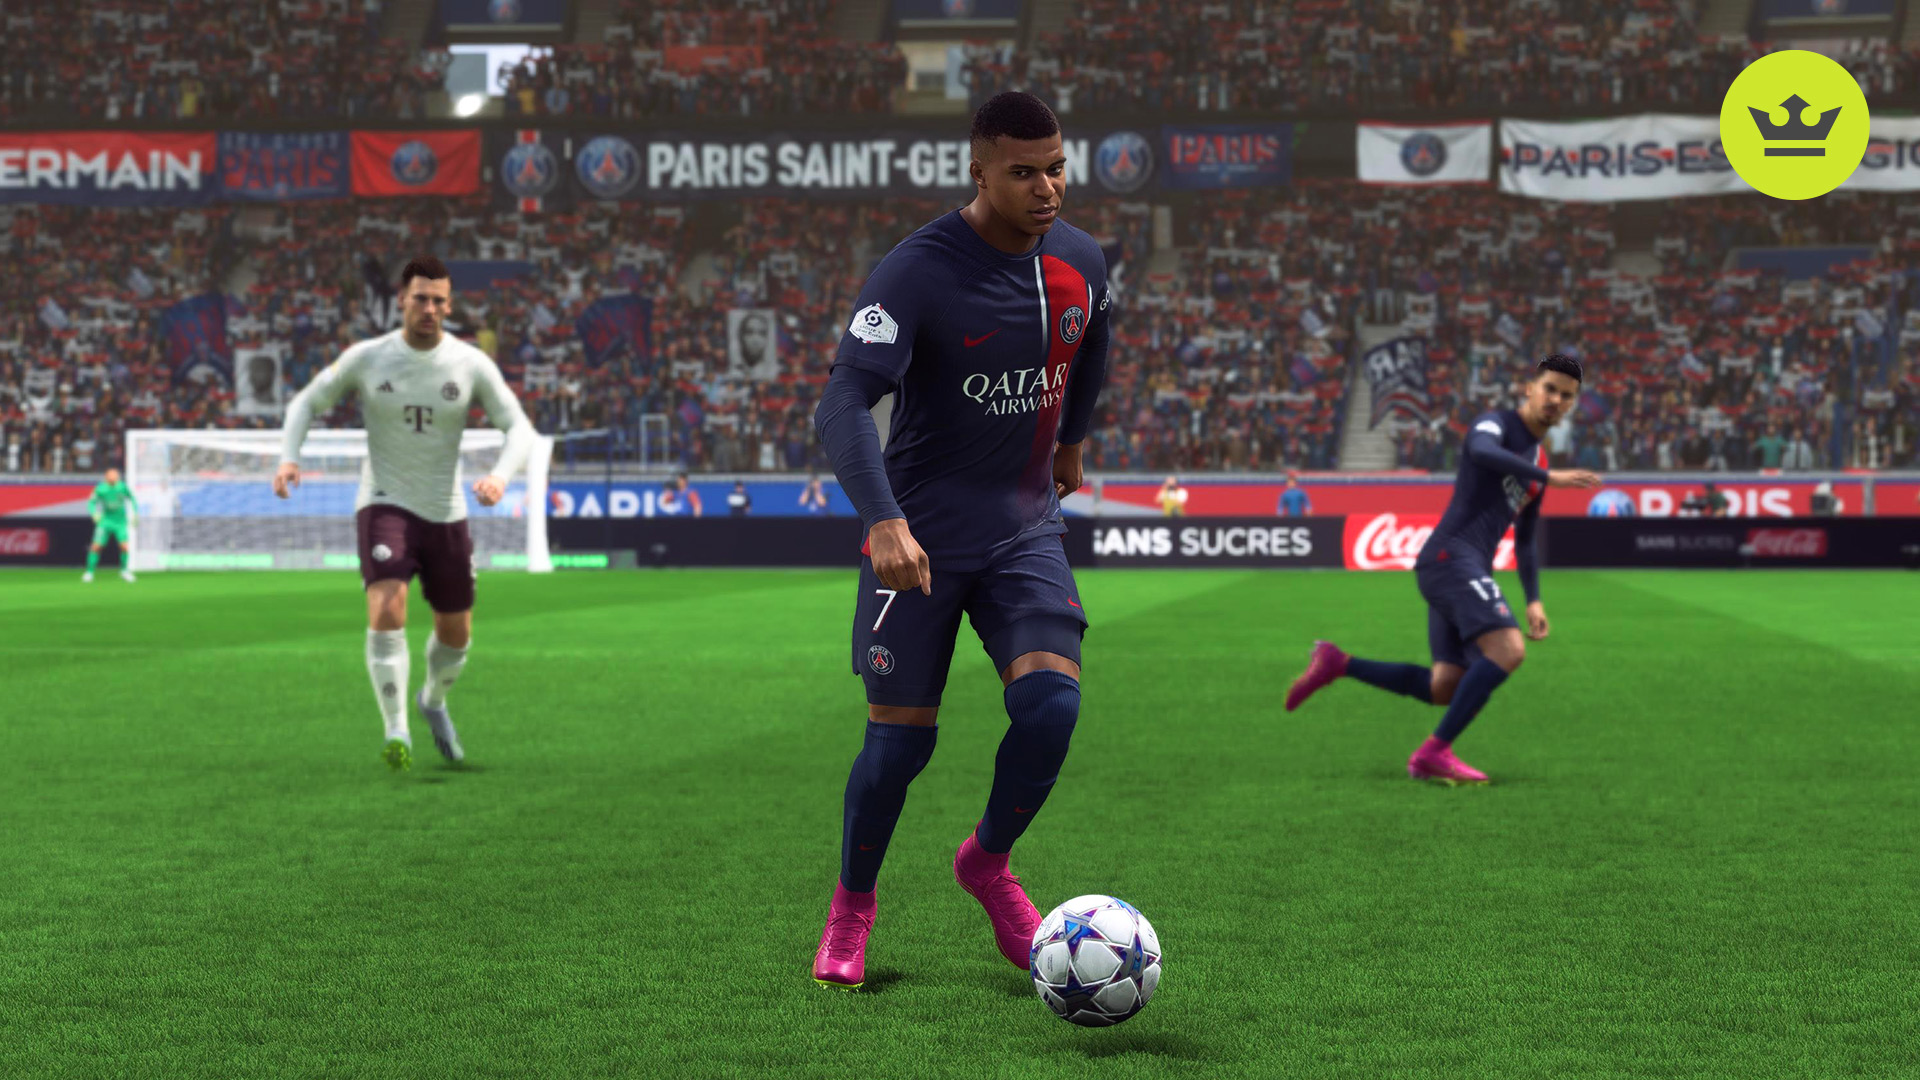 EA FC 24: trailer mostra PSG sem Mbappé e gera debate, fifa